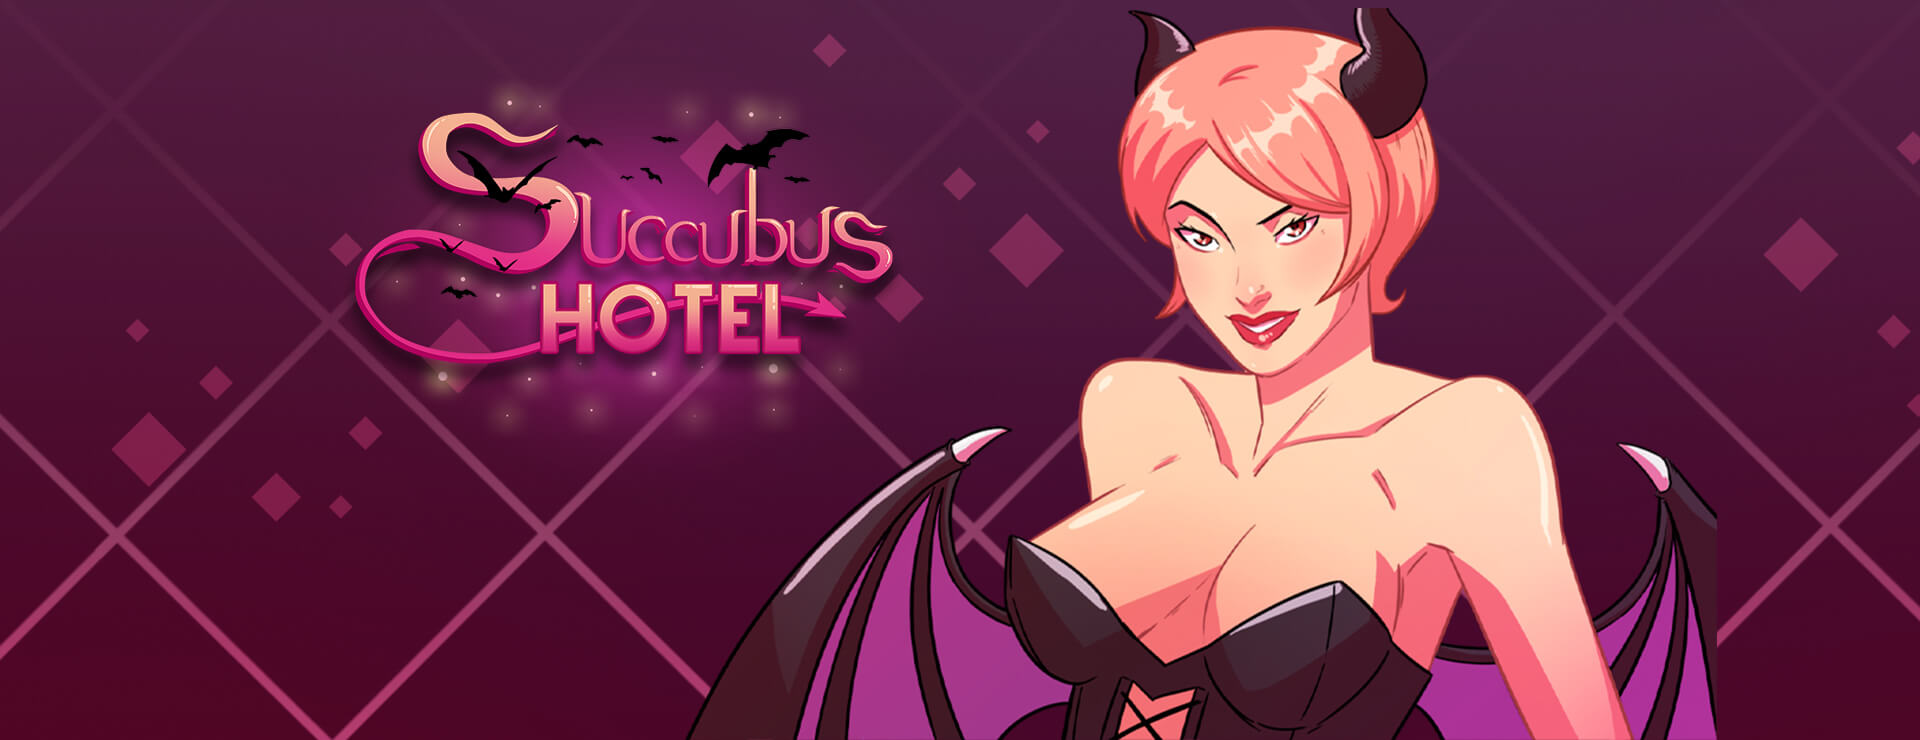 Succubus Hotel - RPG Game